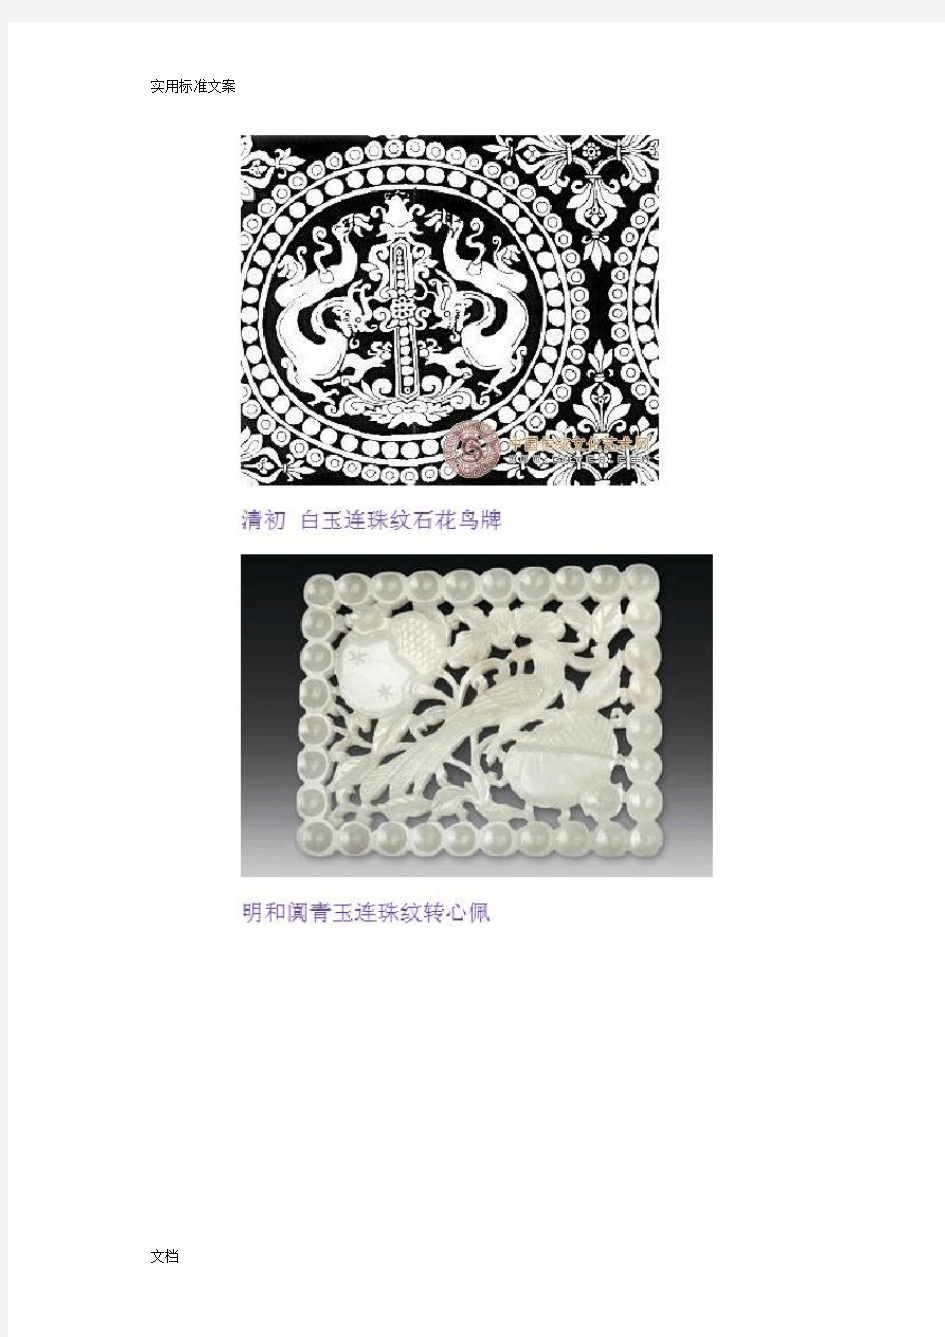 中国传统纹样几何纹样篇